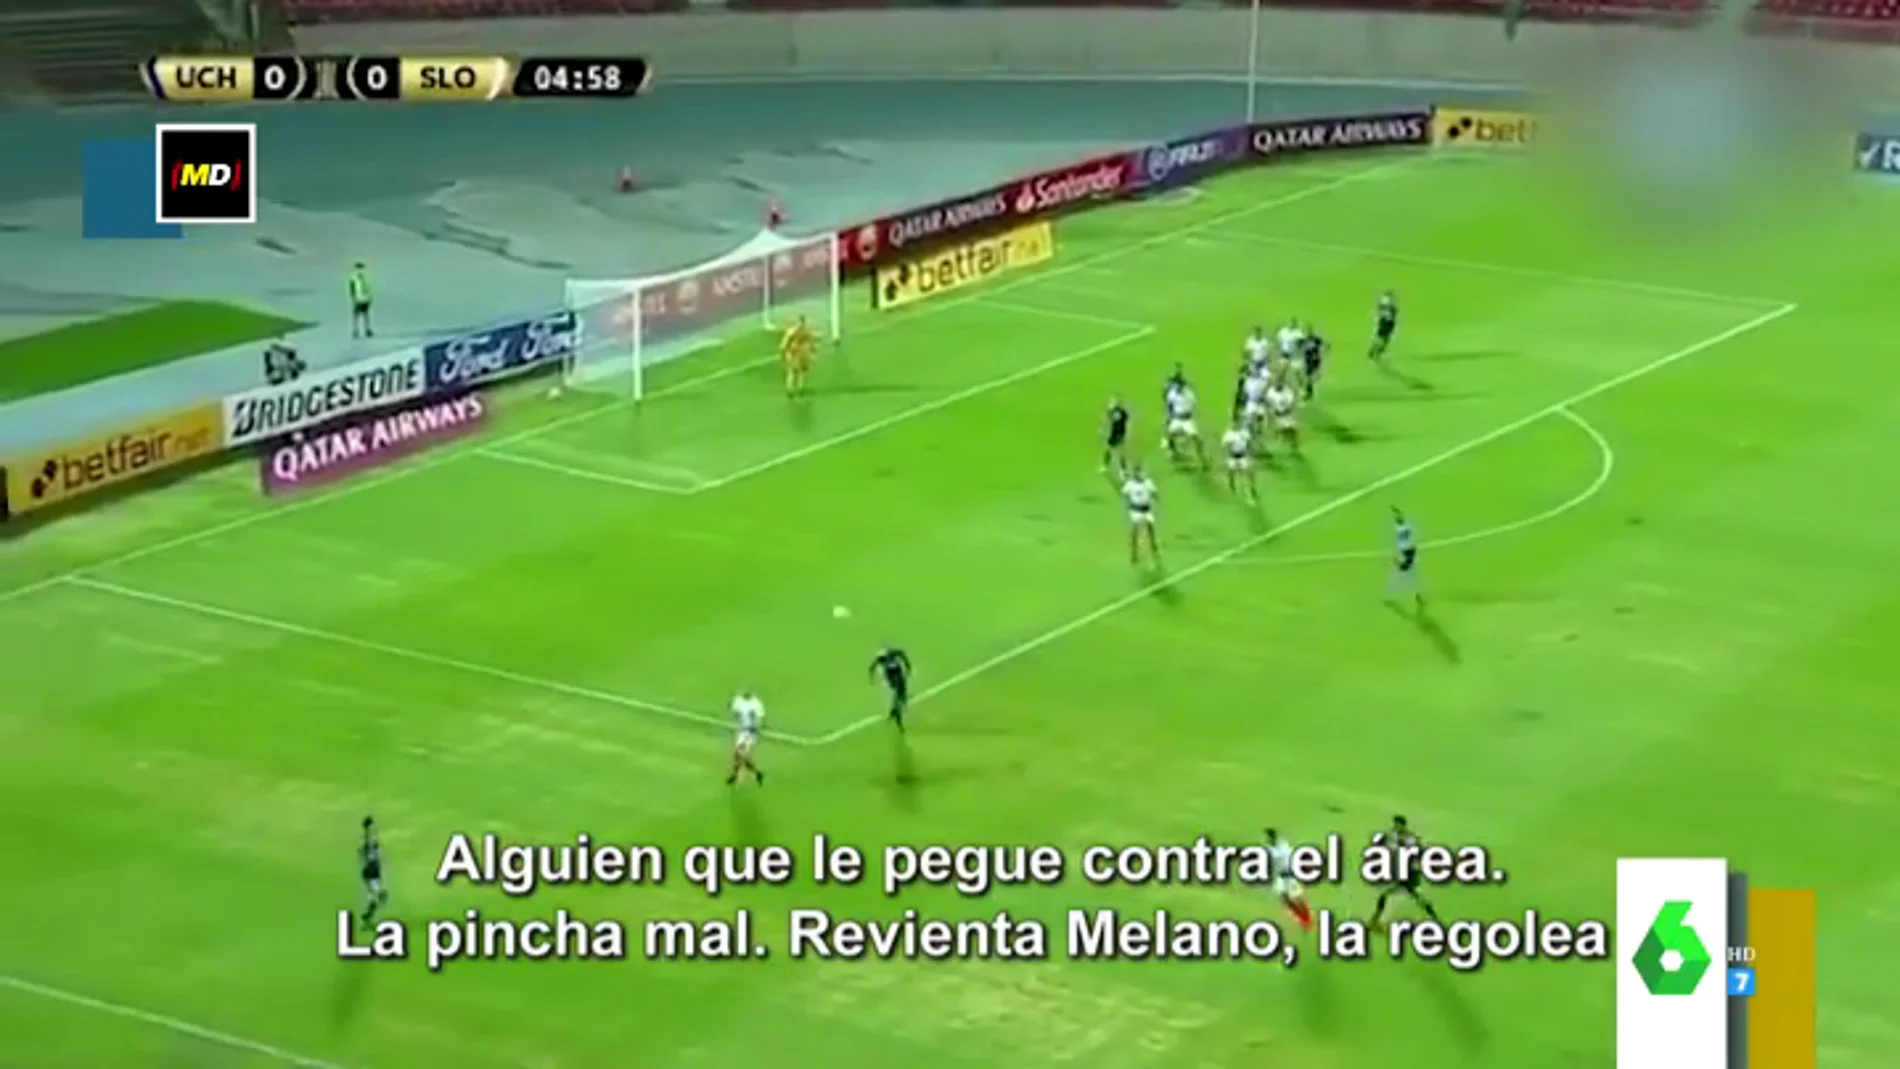 La hilarante retransmisión de un partido de fútbol por el apellido de un jugador: "Revienta Melano"